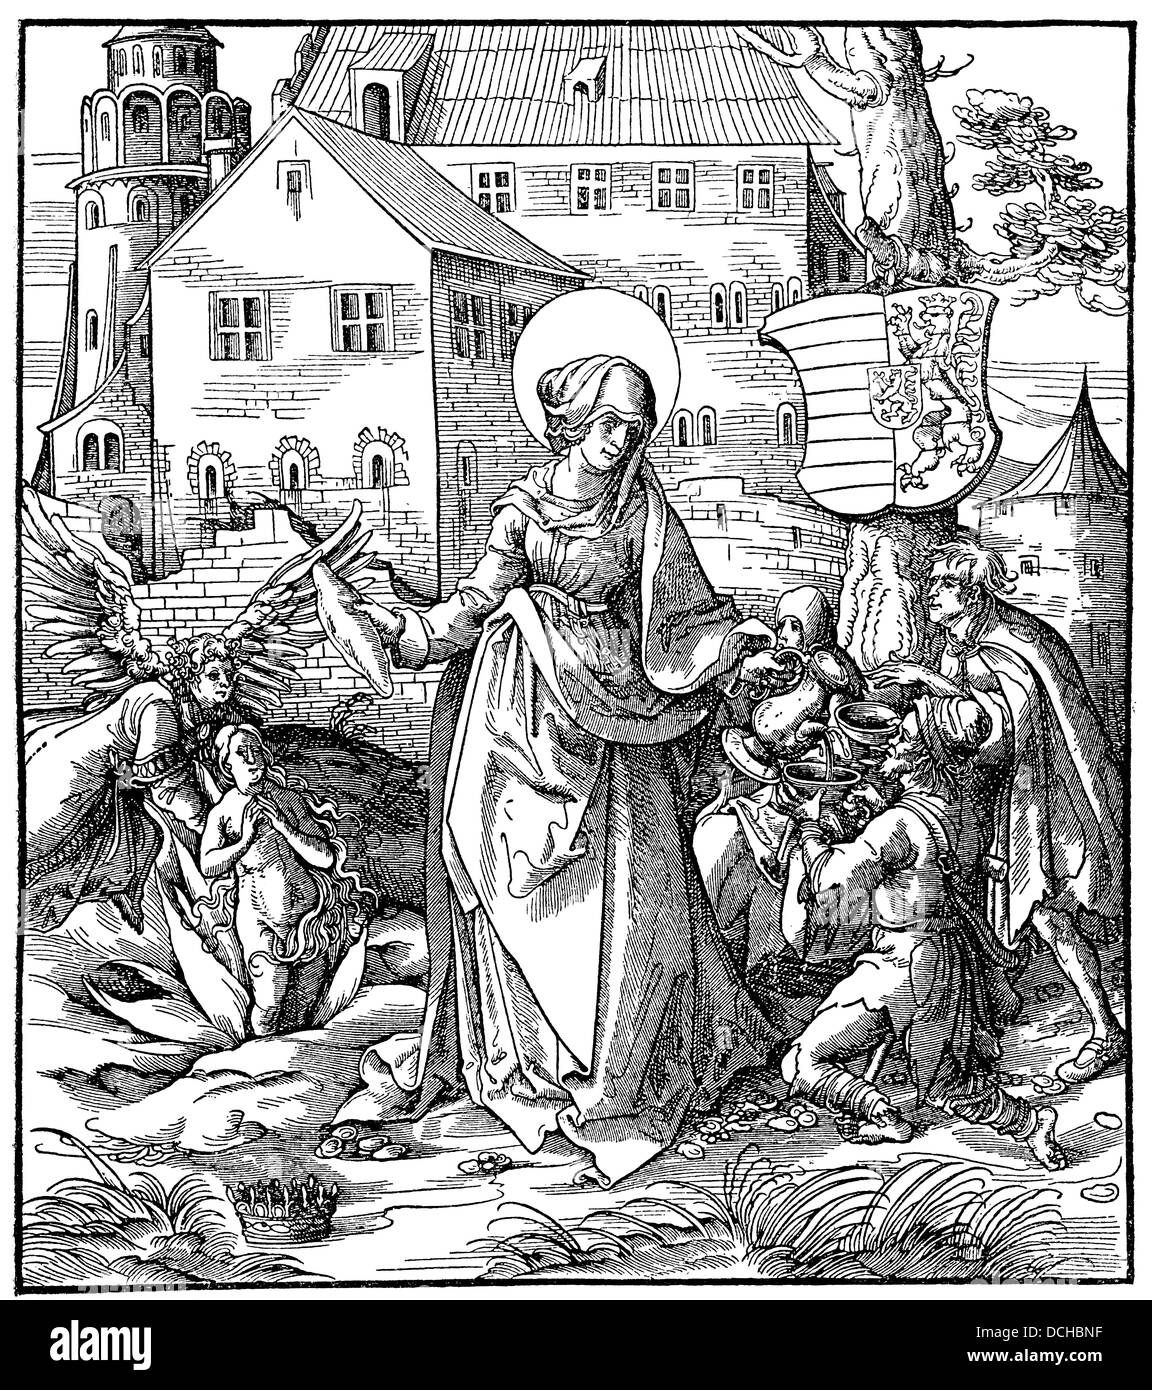 Santa Elisabetta, Hans Burgkmair il sambuco, 1473 - 1531, pittore tedesco, disegnatore, ngraver all inizio del XVI secolo Foto Stock